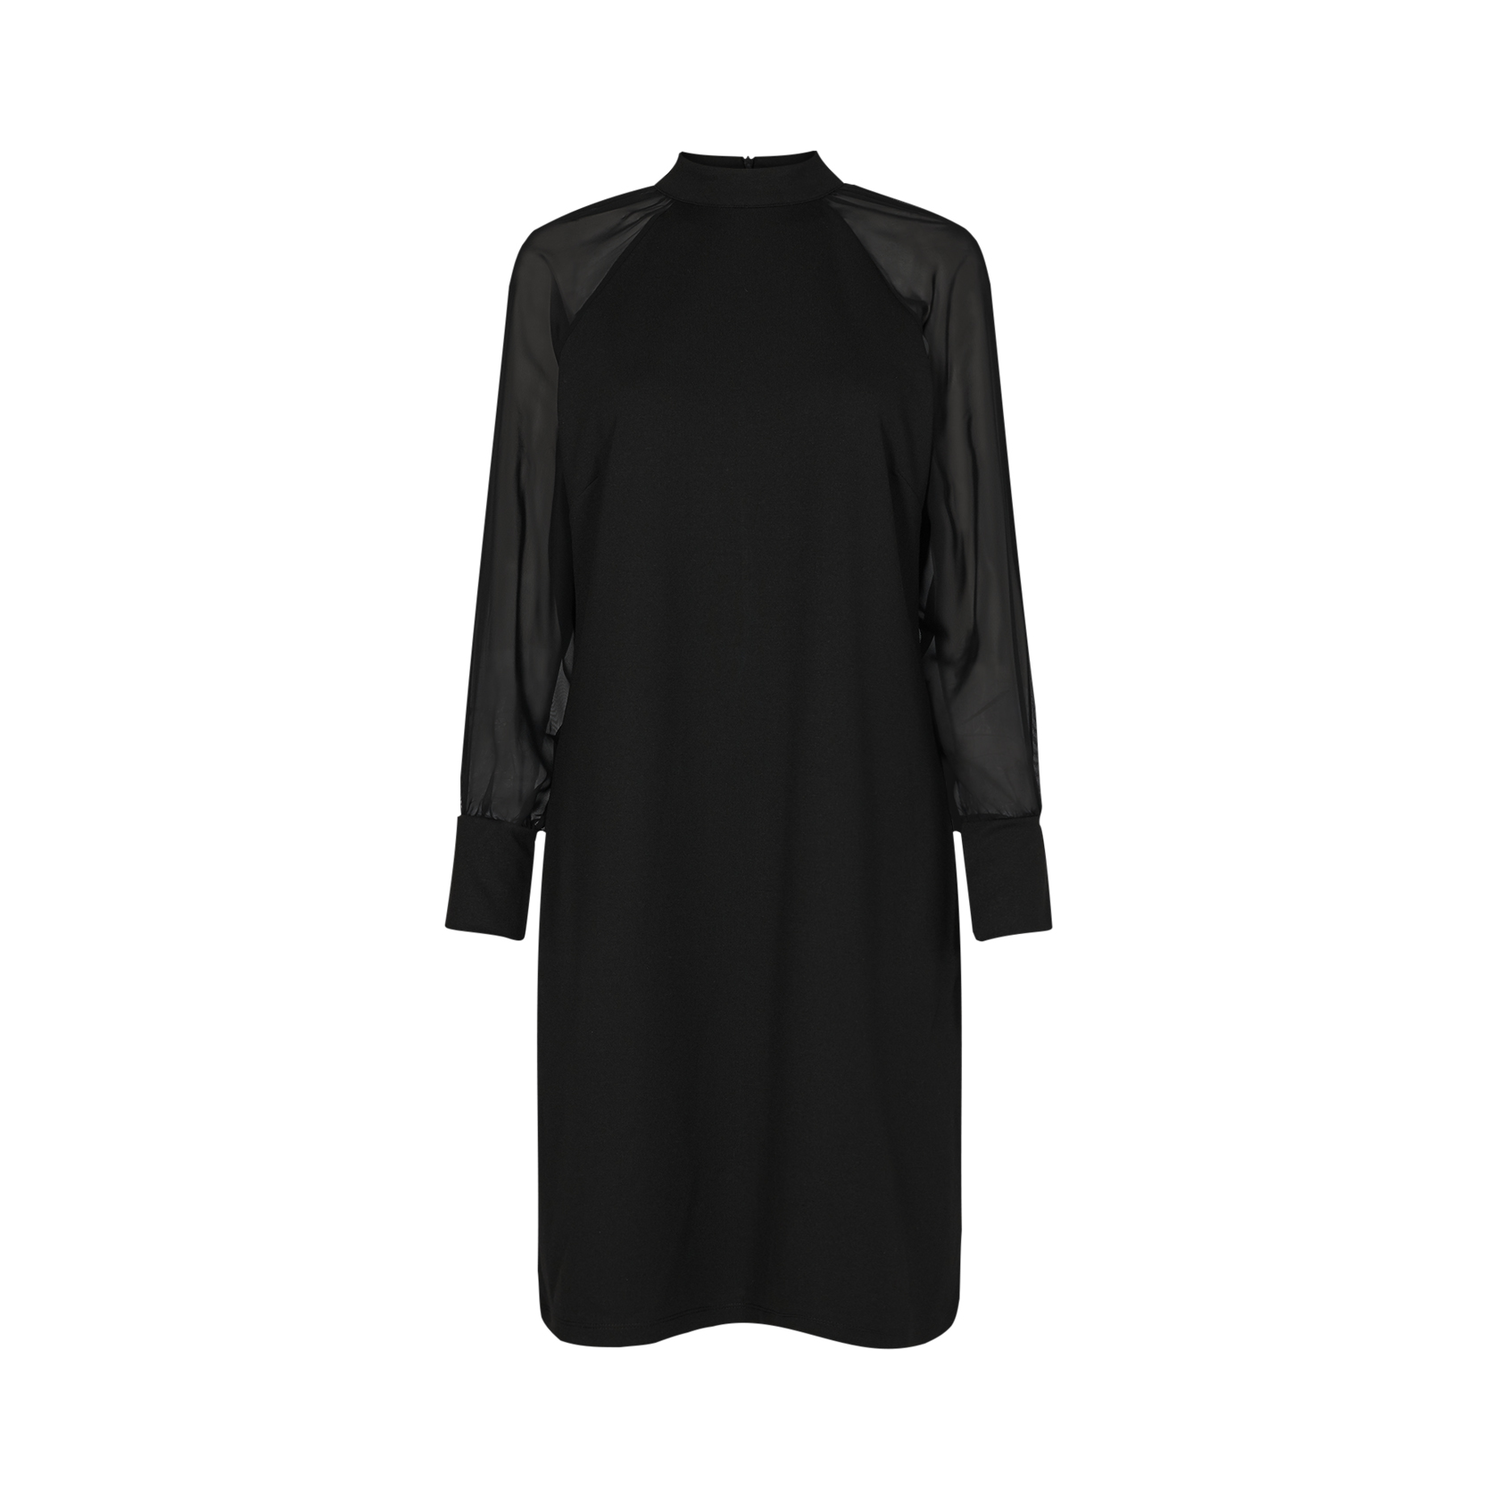 Soyaconcept Kleid mit durchsichtigem Ärmel black